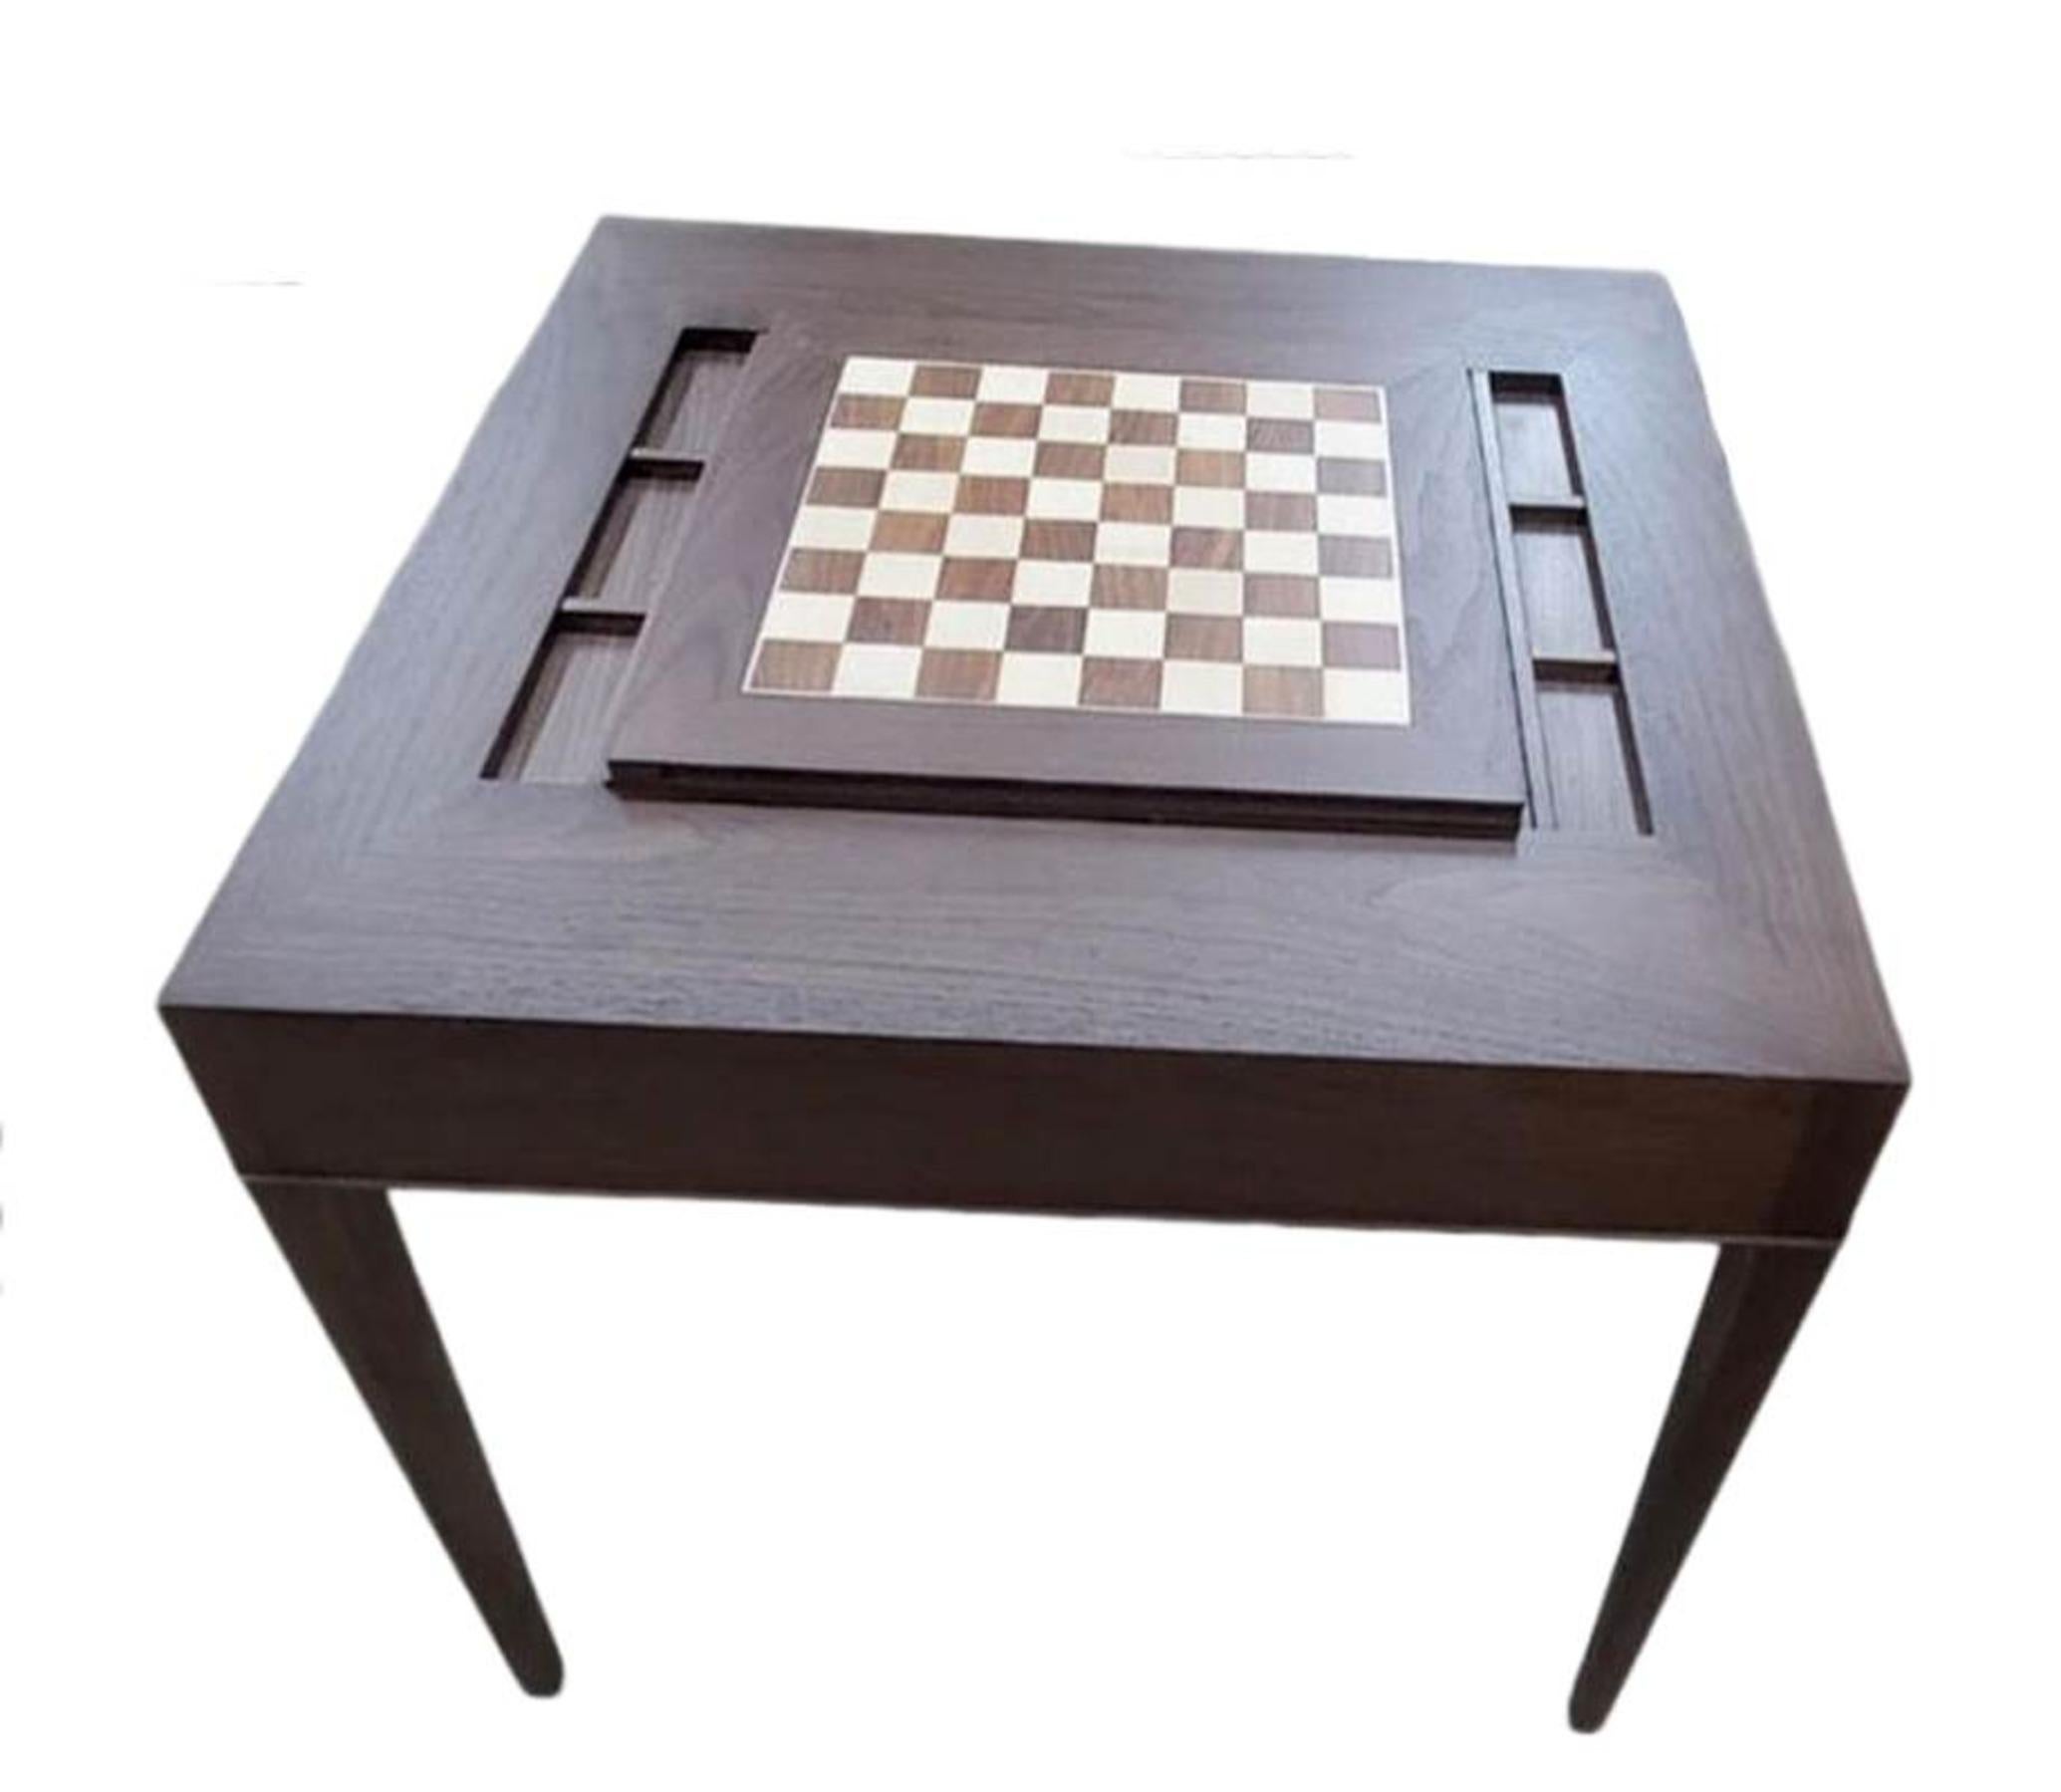 Individueller Tisch aus Nussbaum oder Mahagoni mit abnehmbarer Platte, die das Backgammon-Brett freilegt. Der Deckel kann umgedreht werden, um das Schachbrett freizulegen. Perfekte Größe, um Karten, Poker, Brettspiele etc. zu spielen. Die Intarsien